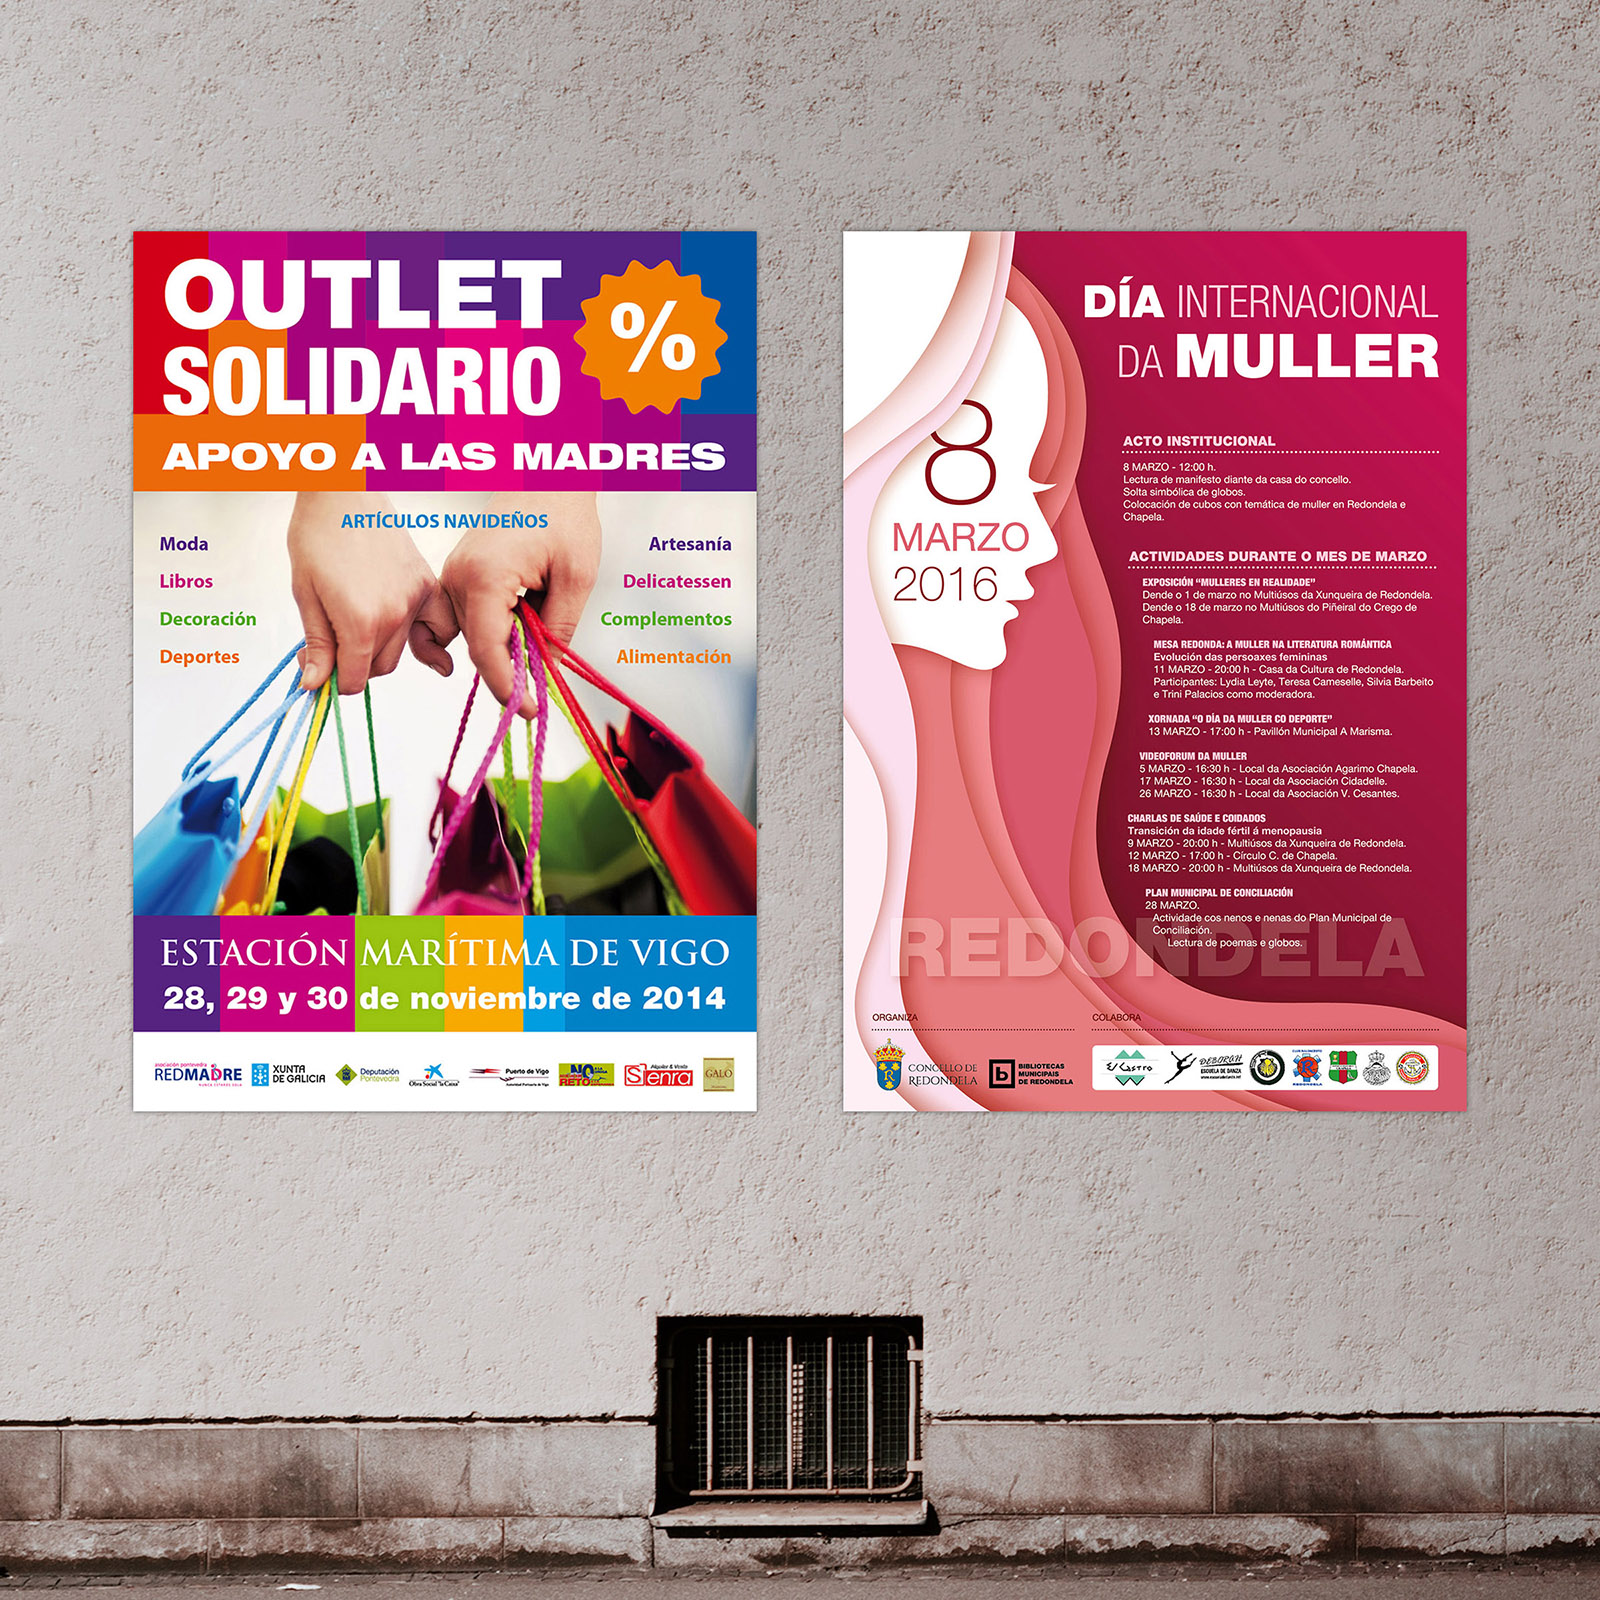 Campaña Comunicación Social Institucional Redondela Vigo Pontevedra Diseño Publicidad Marketing Web Evento cartel